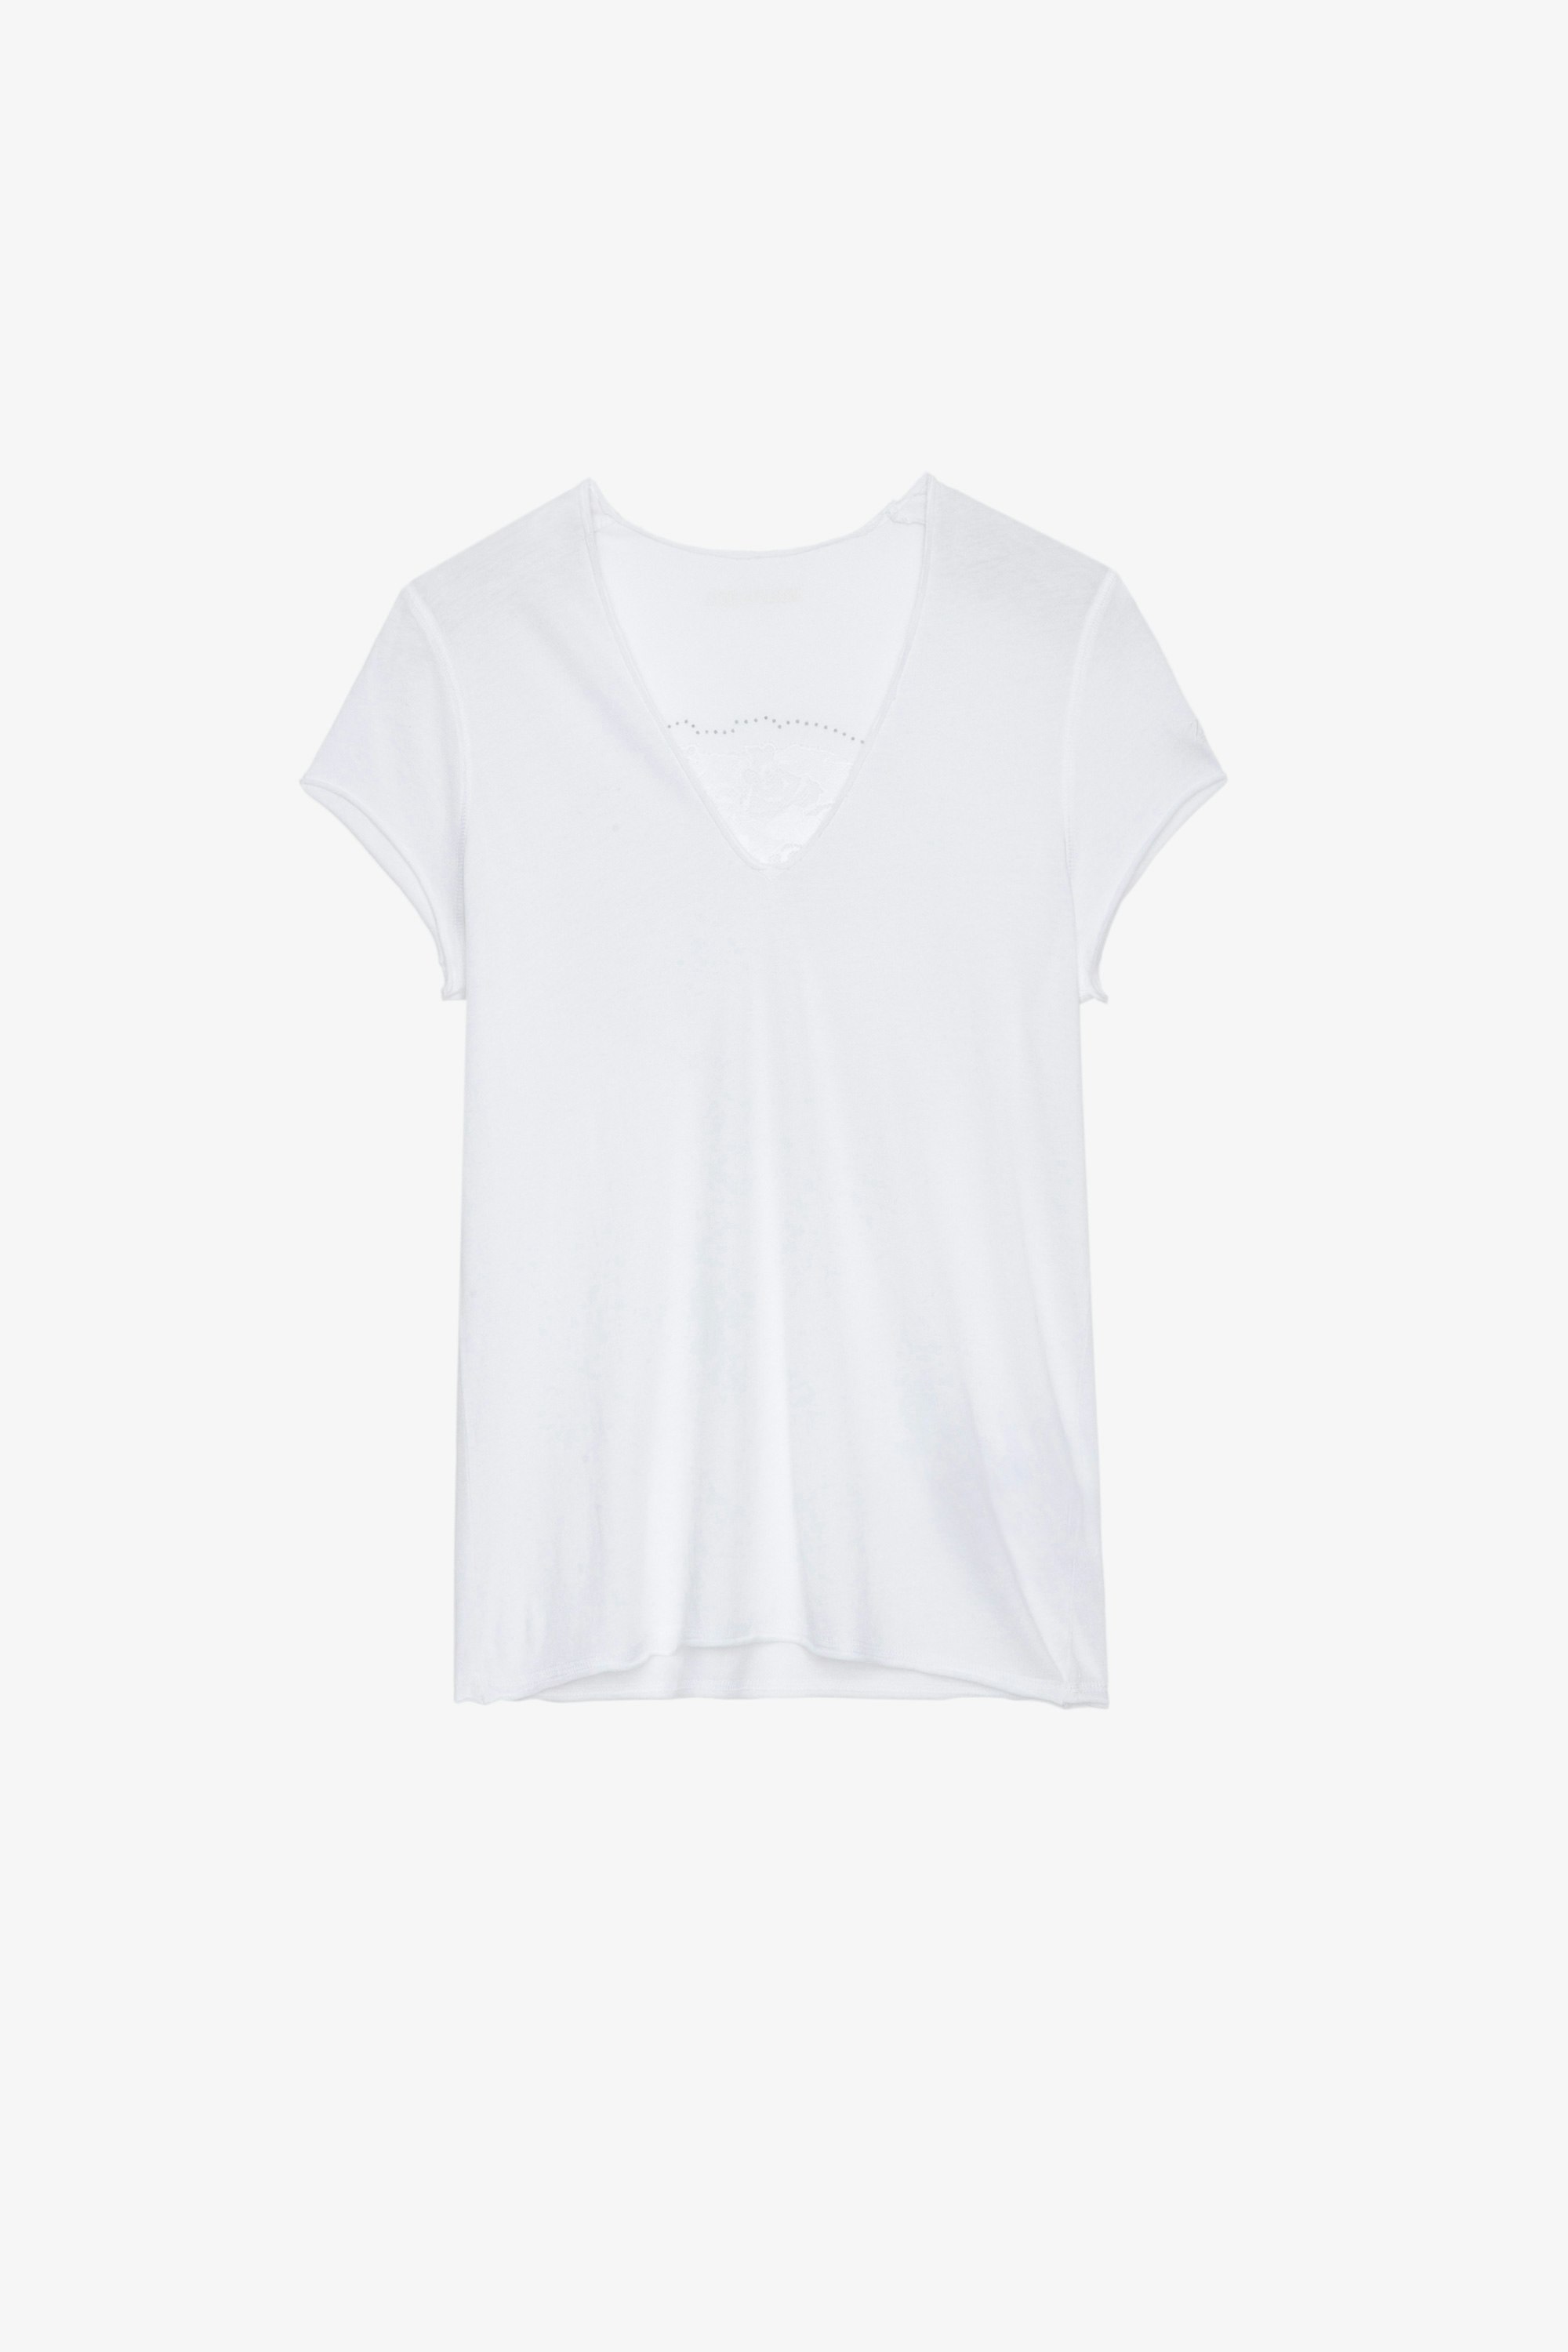 Camiseta Story Fishnet Camiseta de algodón blanca adornada con motivo de calavera con flores y cristales en la espalda para mujer